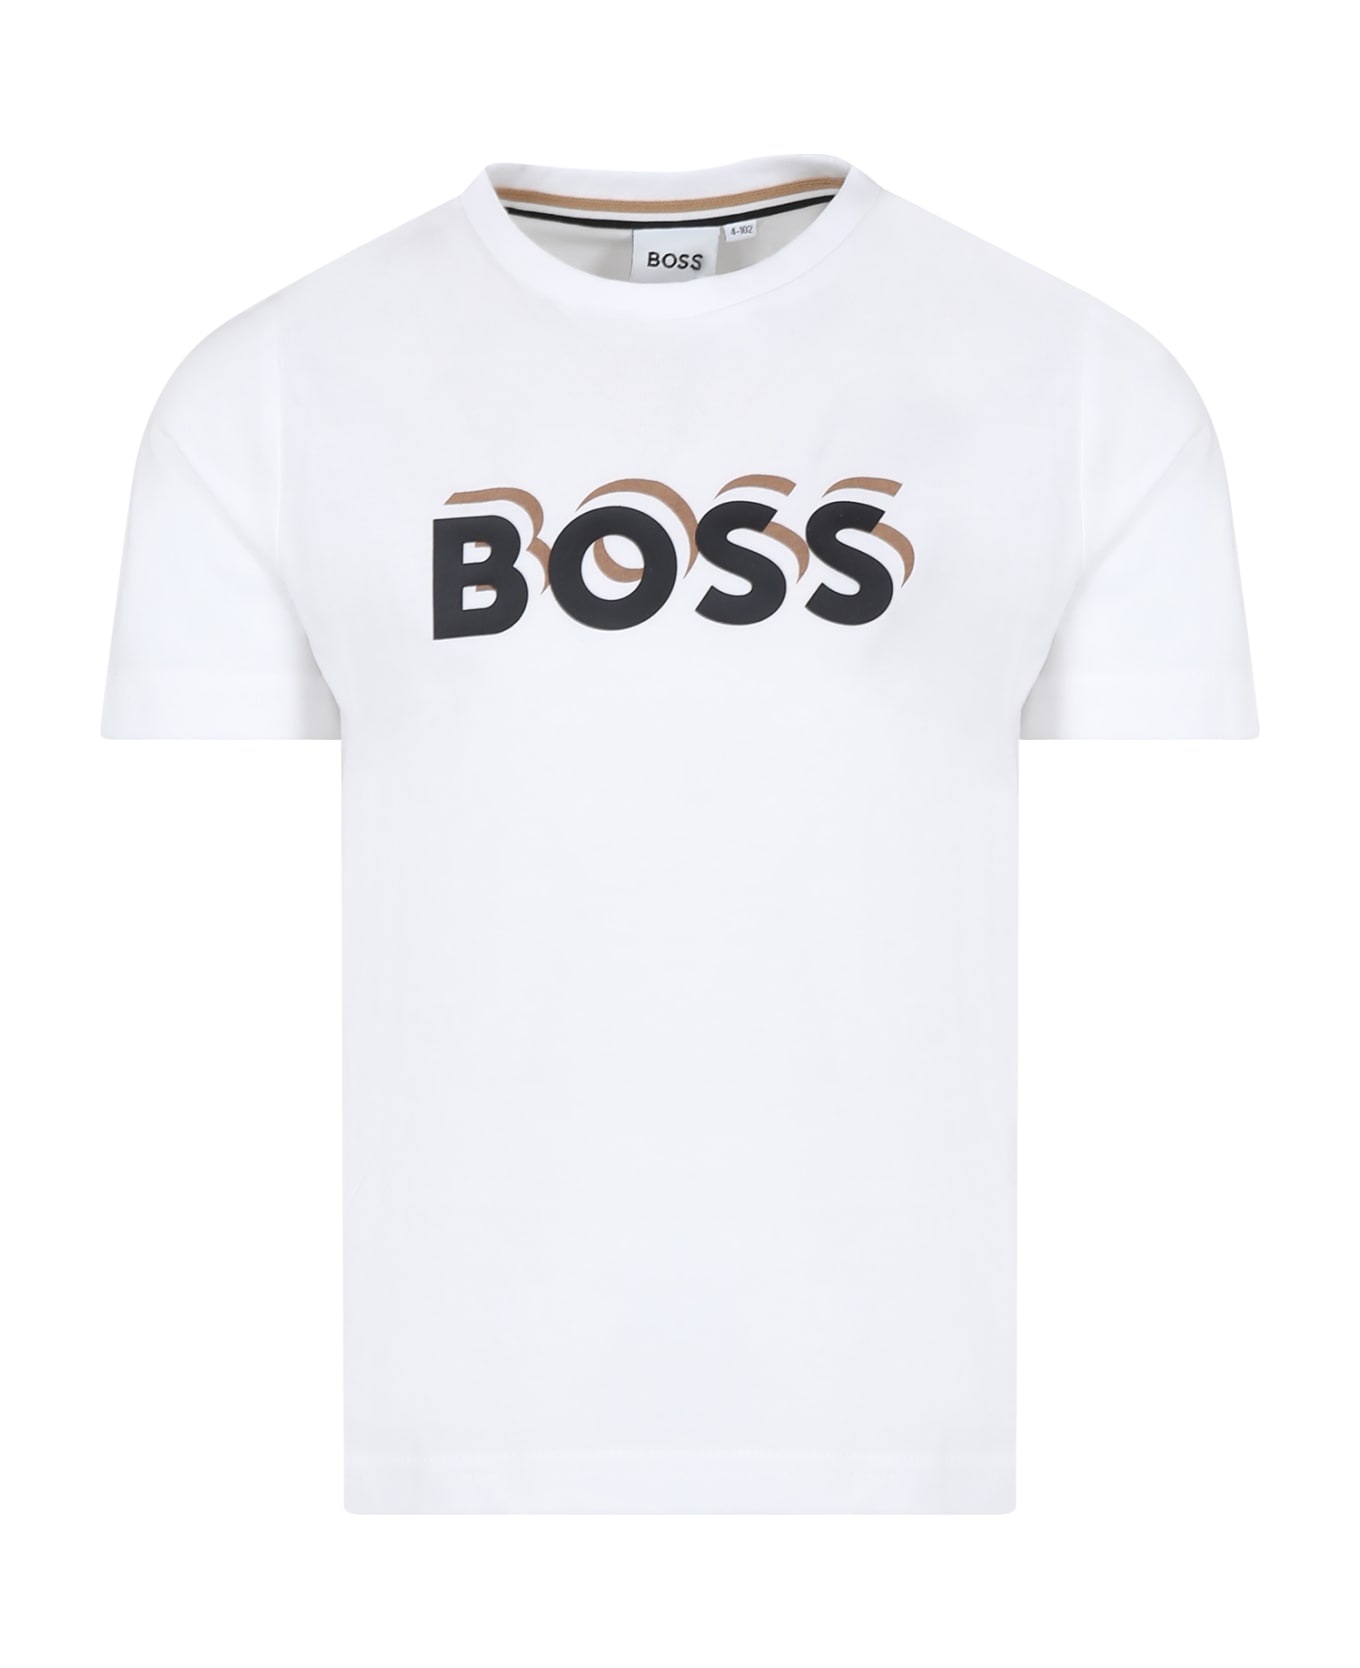 Hugo Boss White T-shirt For Boy With Logo - White